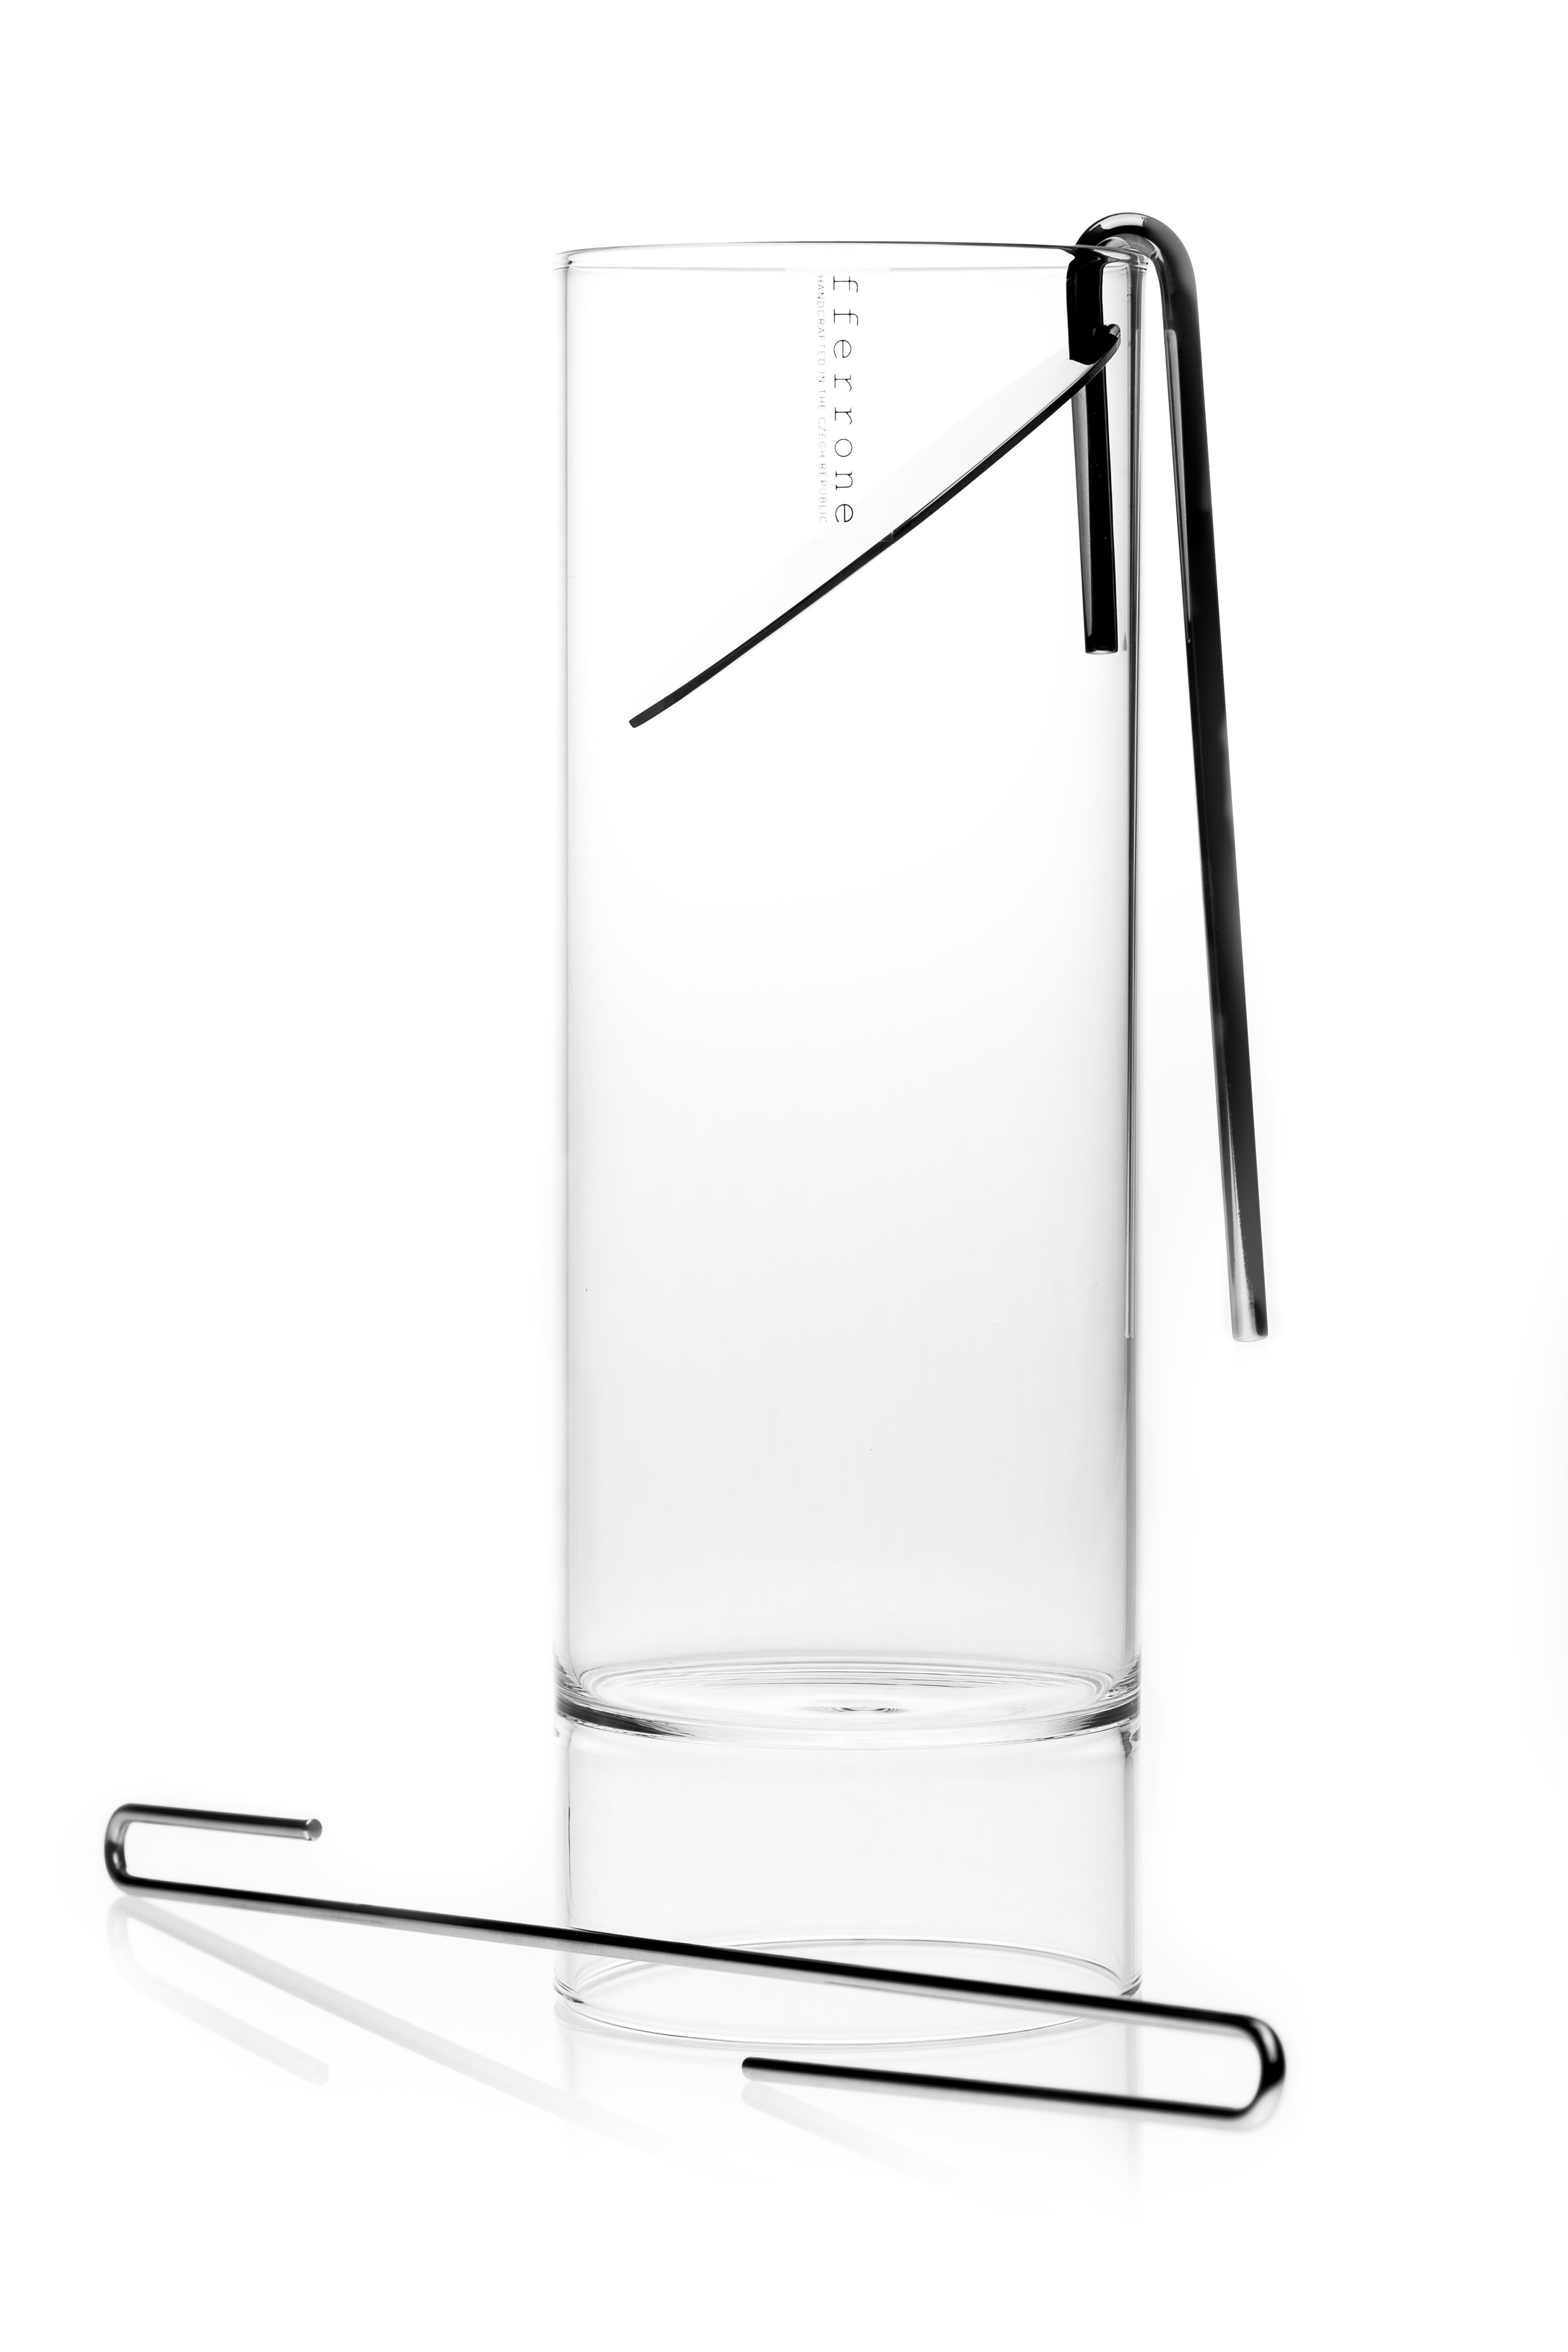 Das moderne Set der Revolution Collection aus tschechischem Glas enthält eine Karaffe für Cocktailmixer, ein Sieb, einen Rührstab und sechs Likörgläser mit zwei Enden.

Die minimalistische Collection'S Revolution besticht durch ihre schlichte